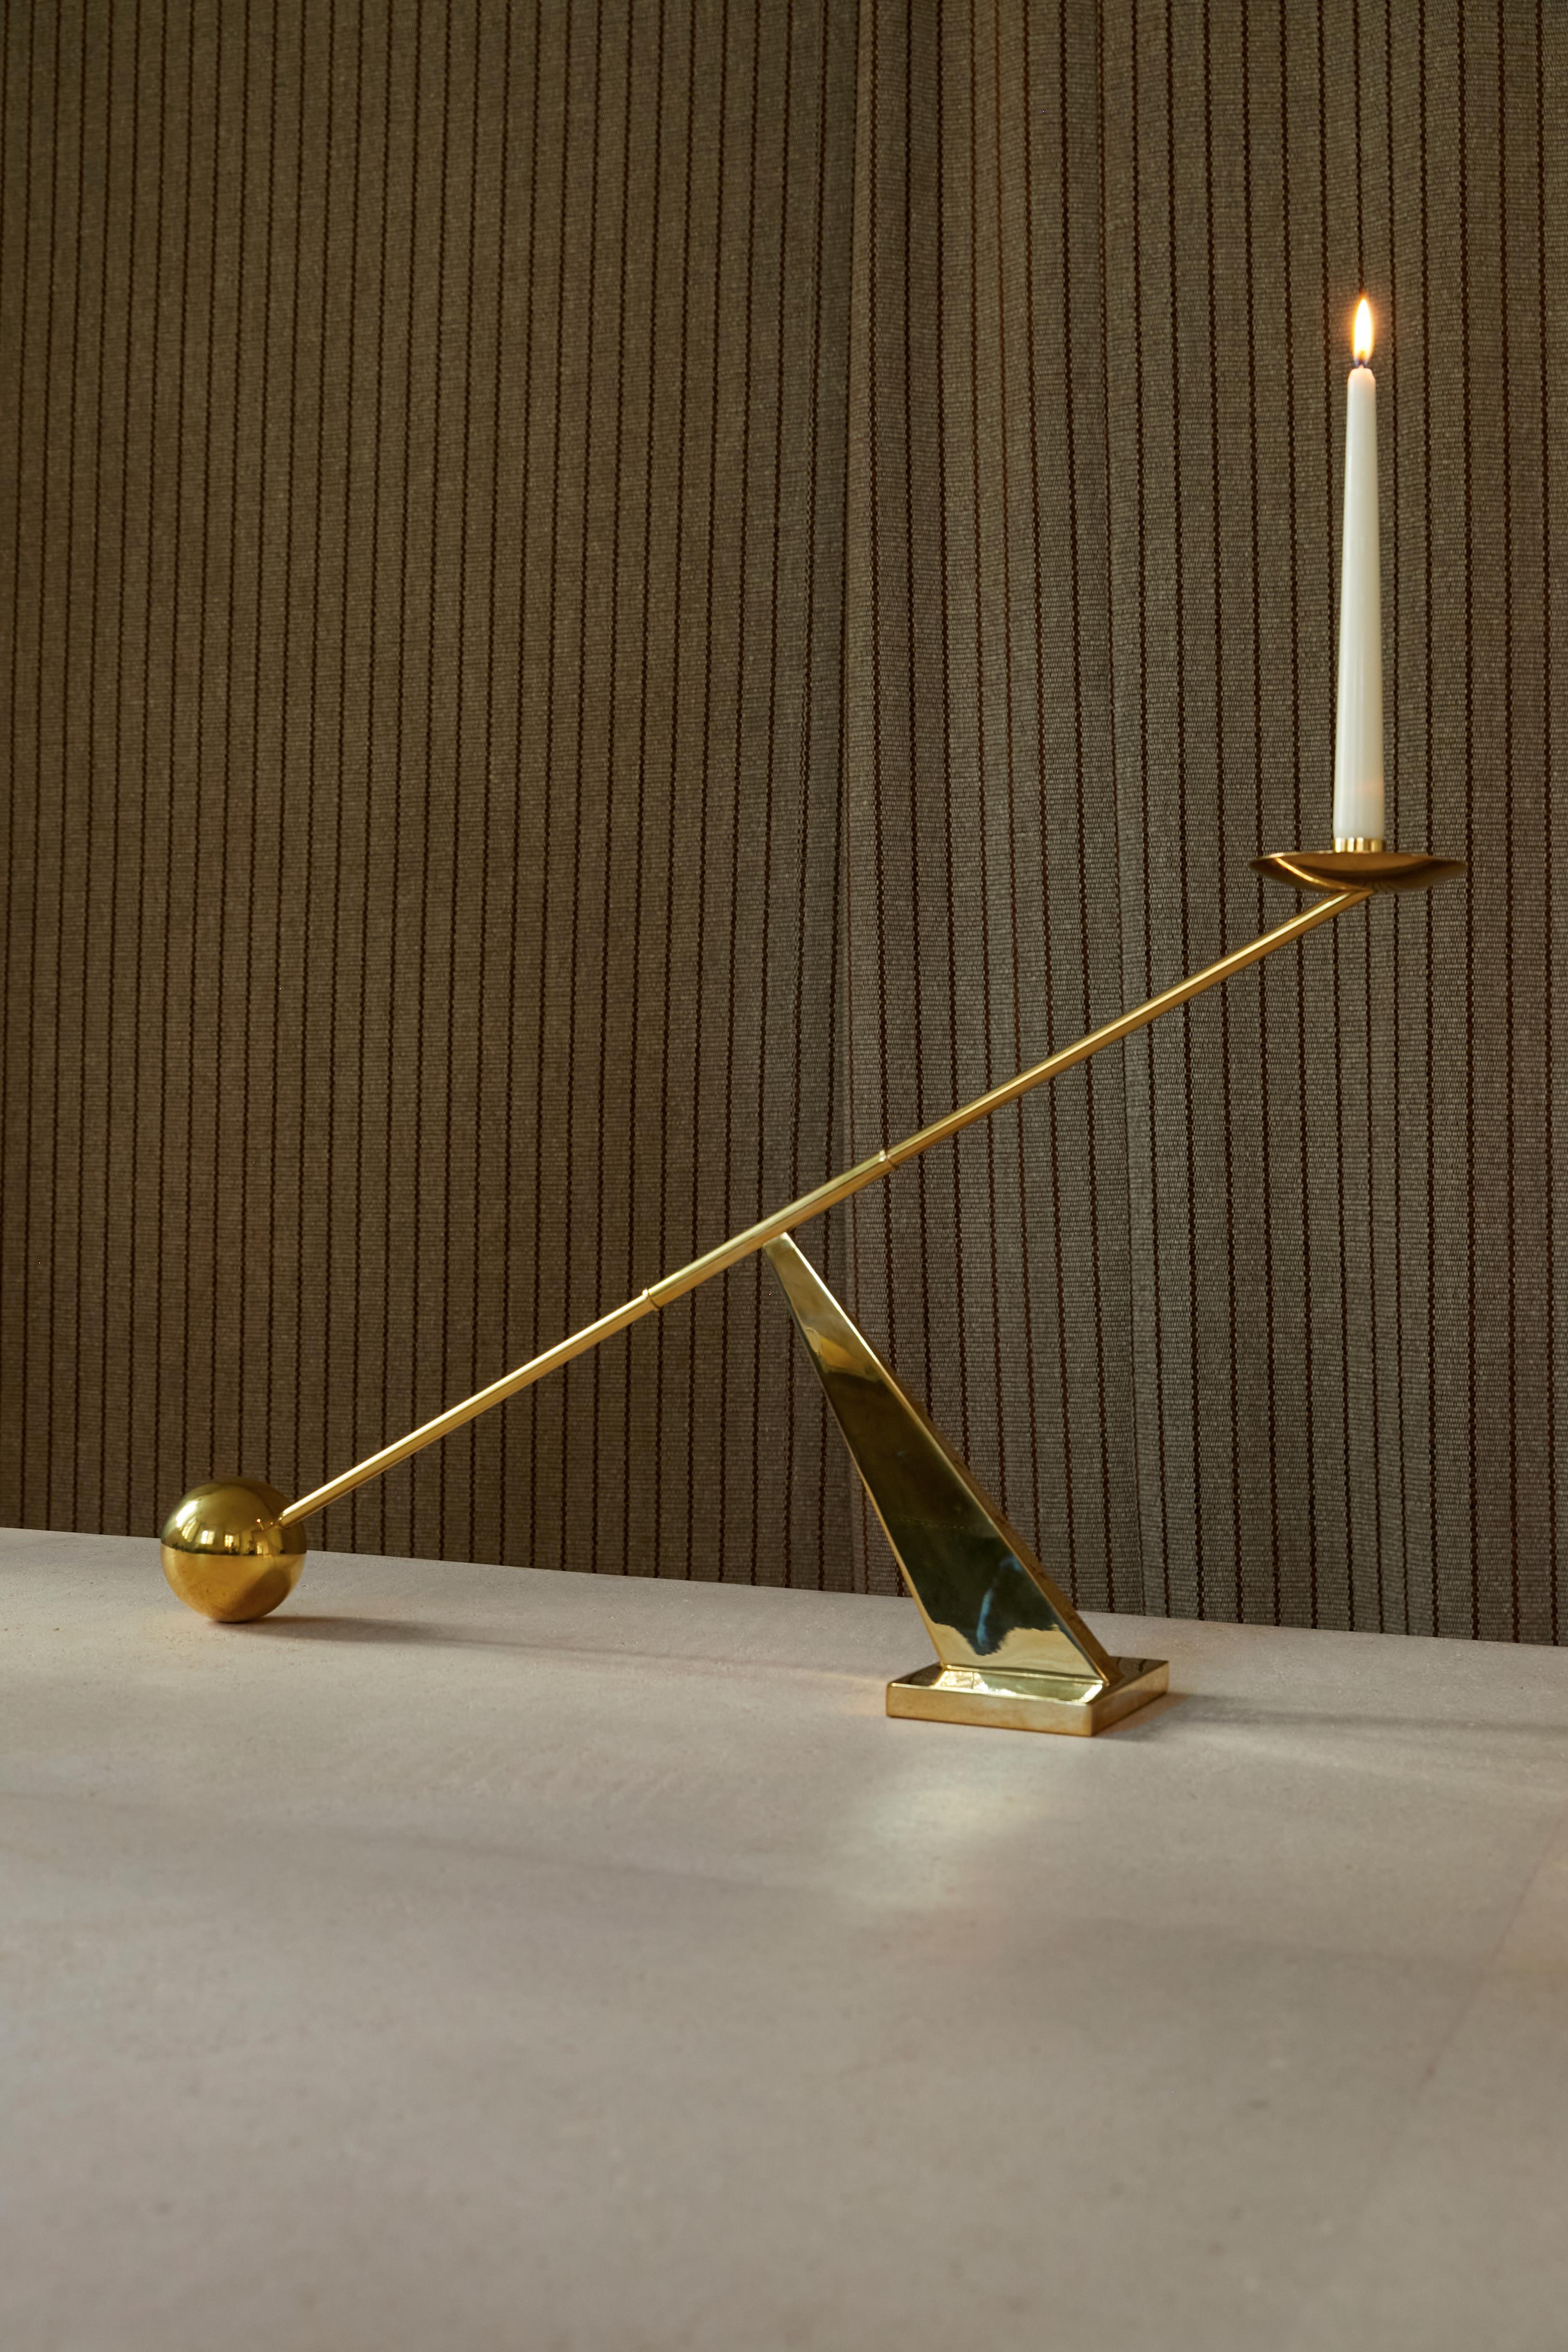 
Messing-Tischkandelaber, der sich durch seine einfache geometrische Form auszeichnet. Eine Kugel, ein Winkel und eine Linie, die sich zu diesem einzigartigen Design zusammenfügen. 